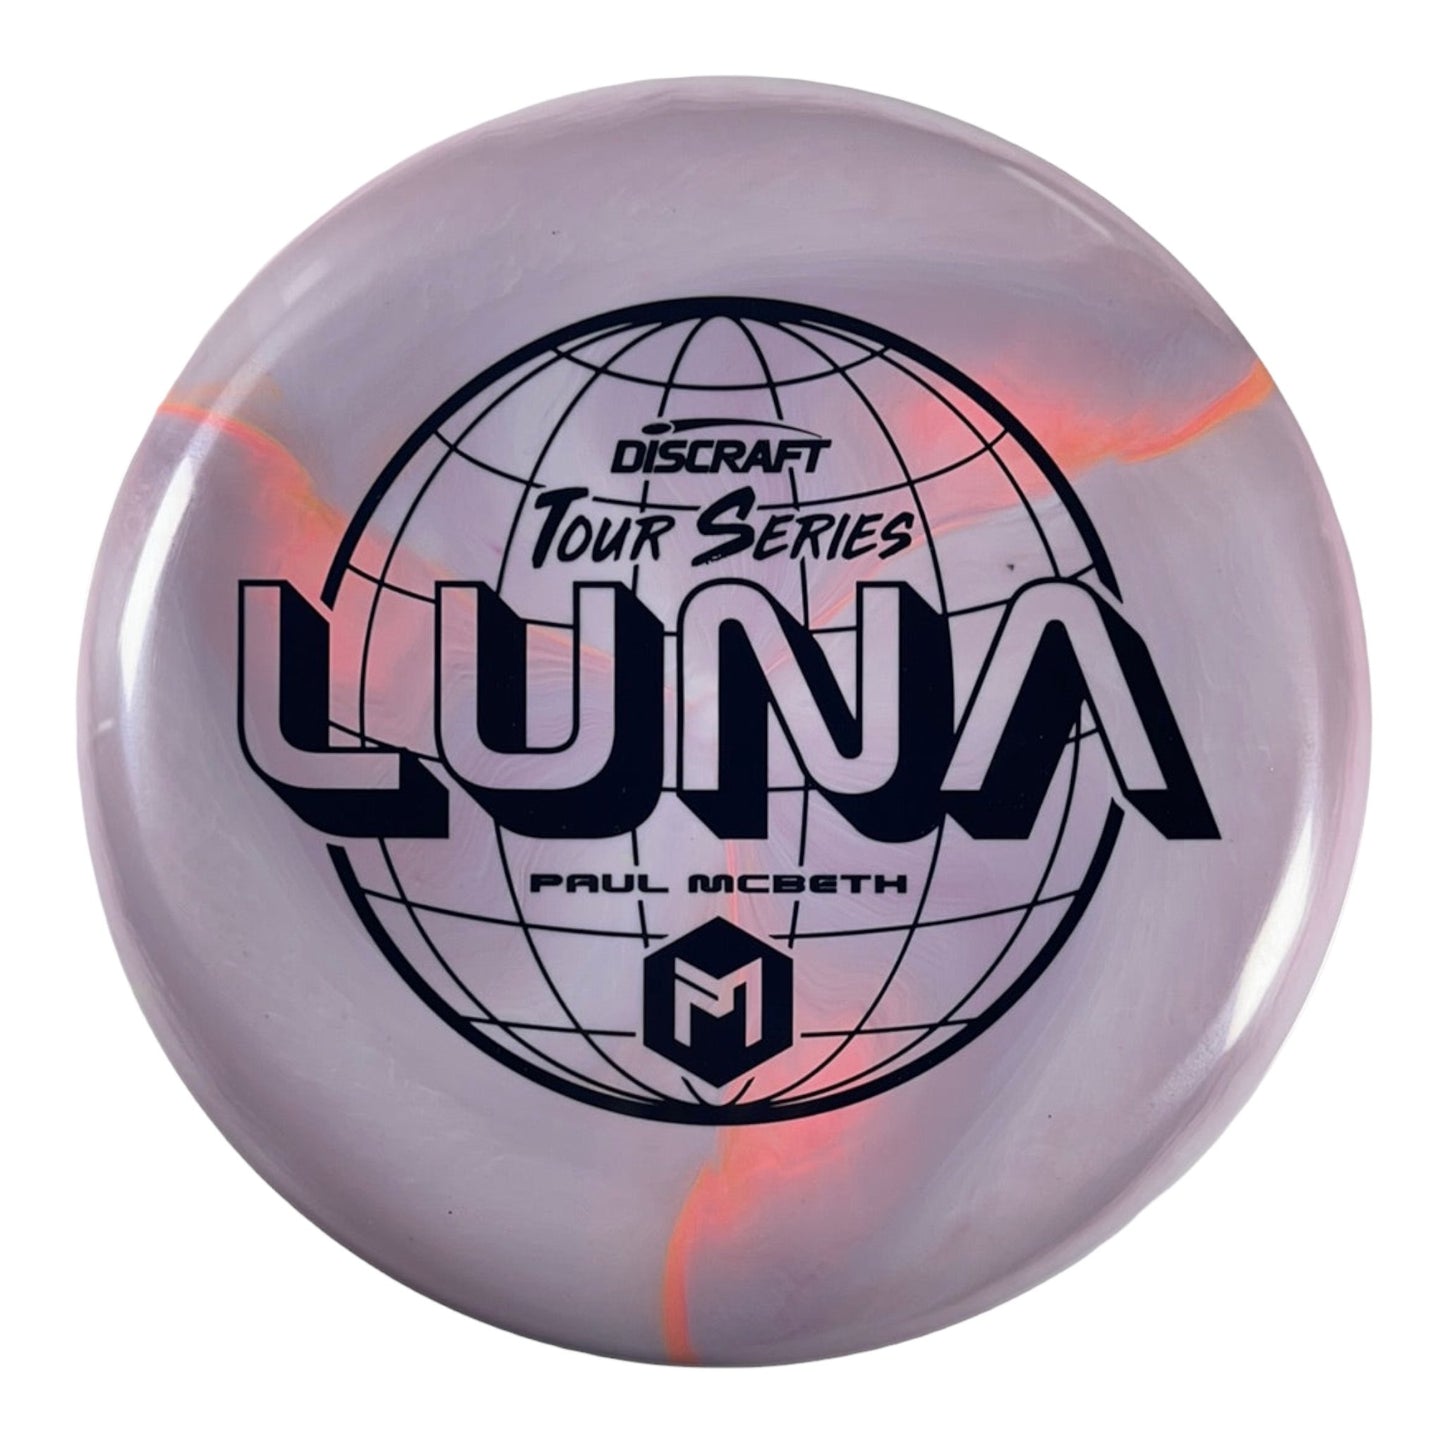 Discraft Luna | ESP | Purple/Black 174g (Paul McBeth) Disc Golf